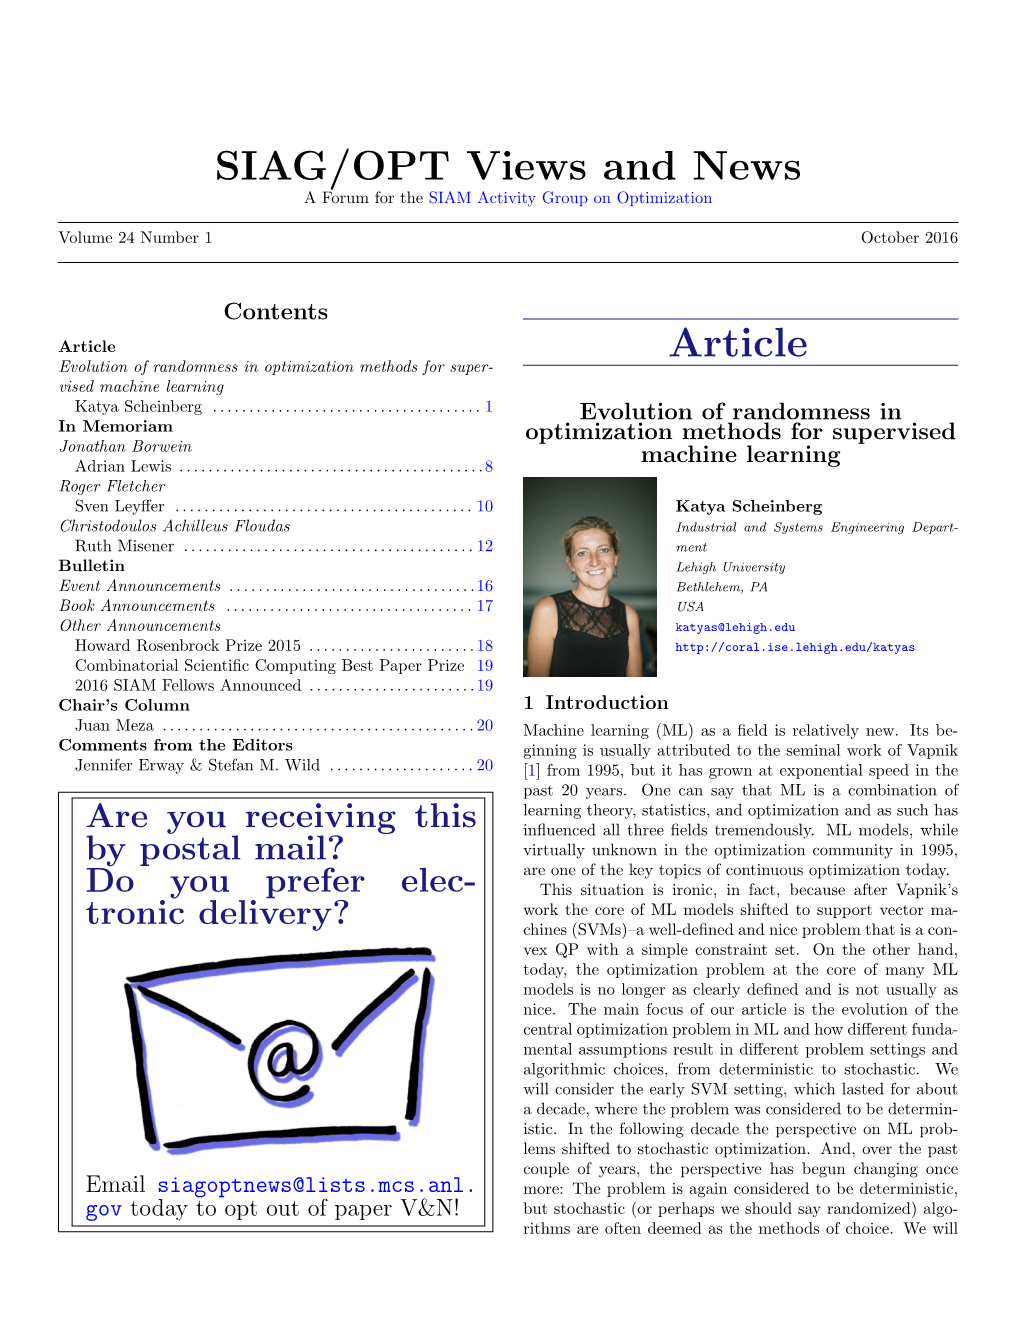 SIAG/OPT Views and News 24(1)